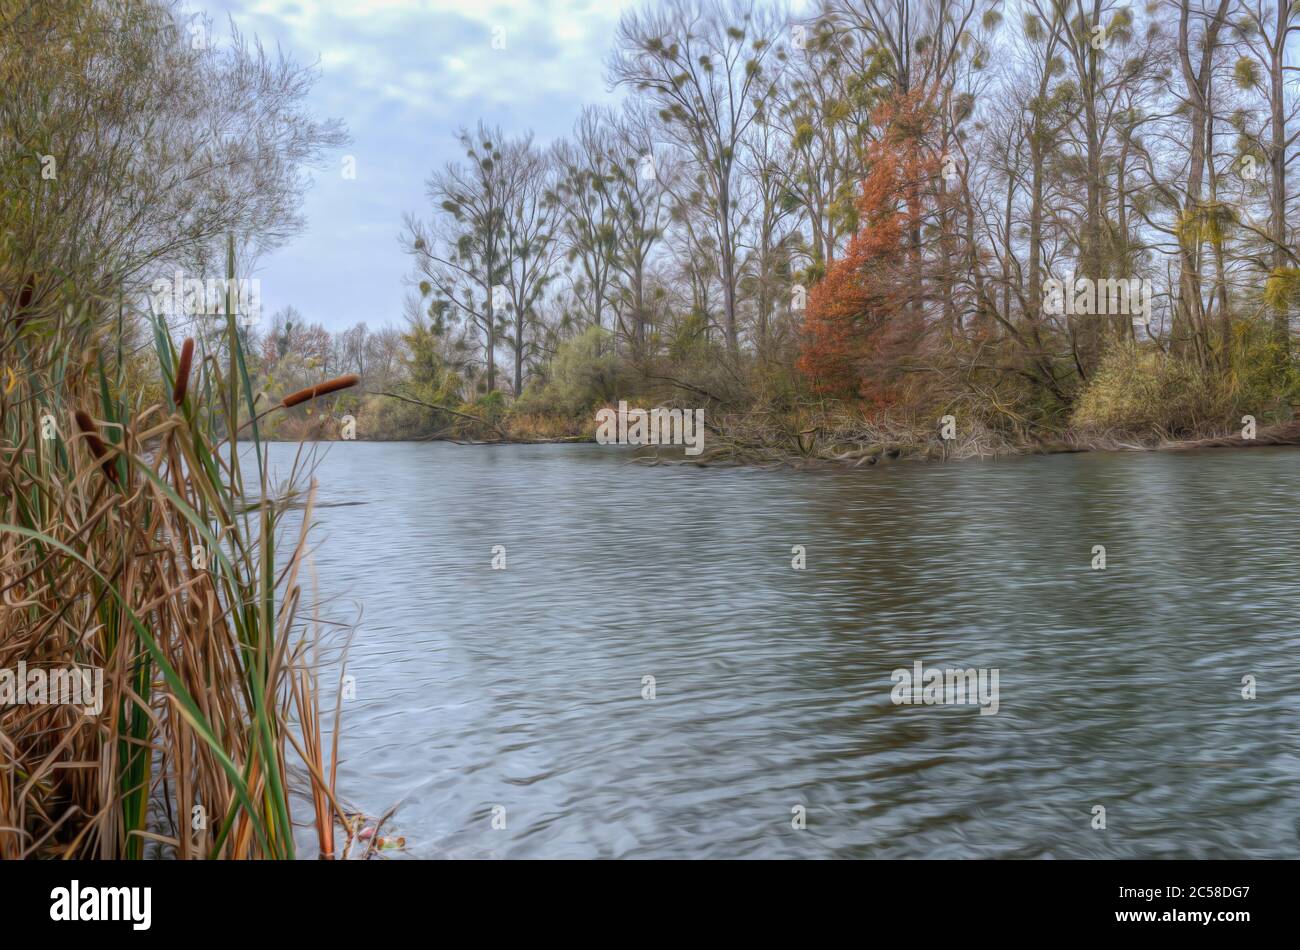 Schilf blüht auf einem See am Rhein Stock Photo